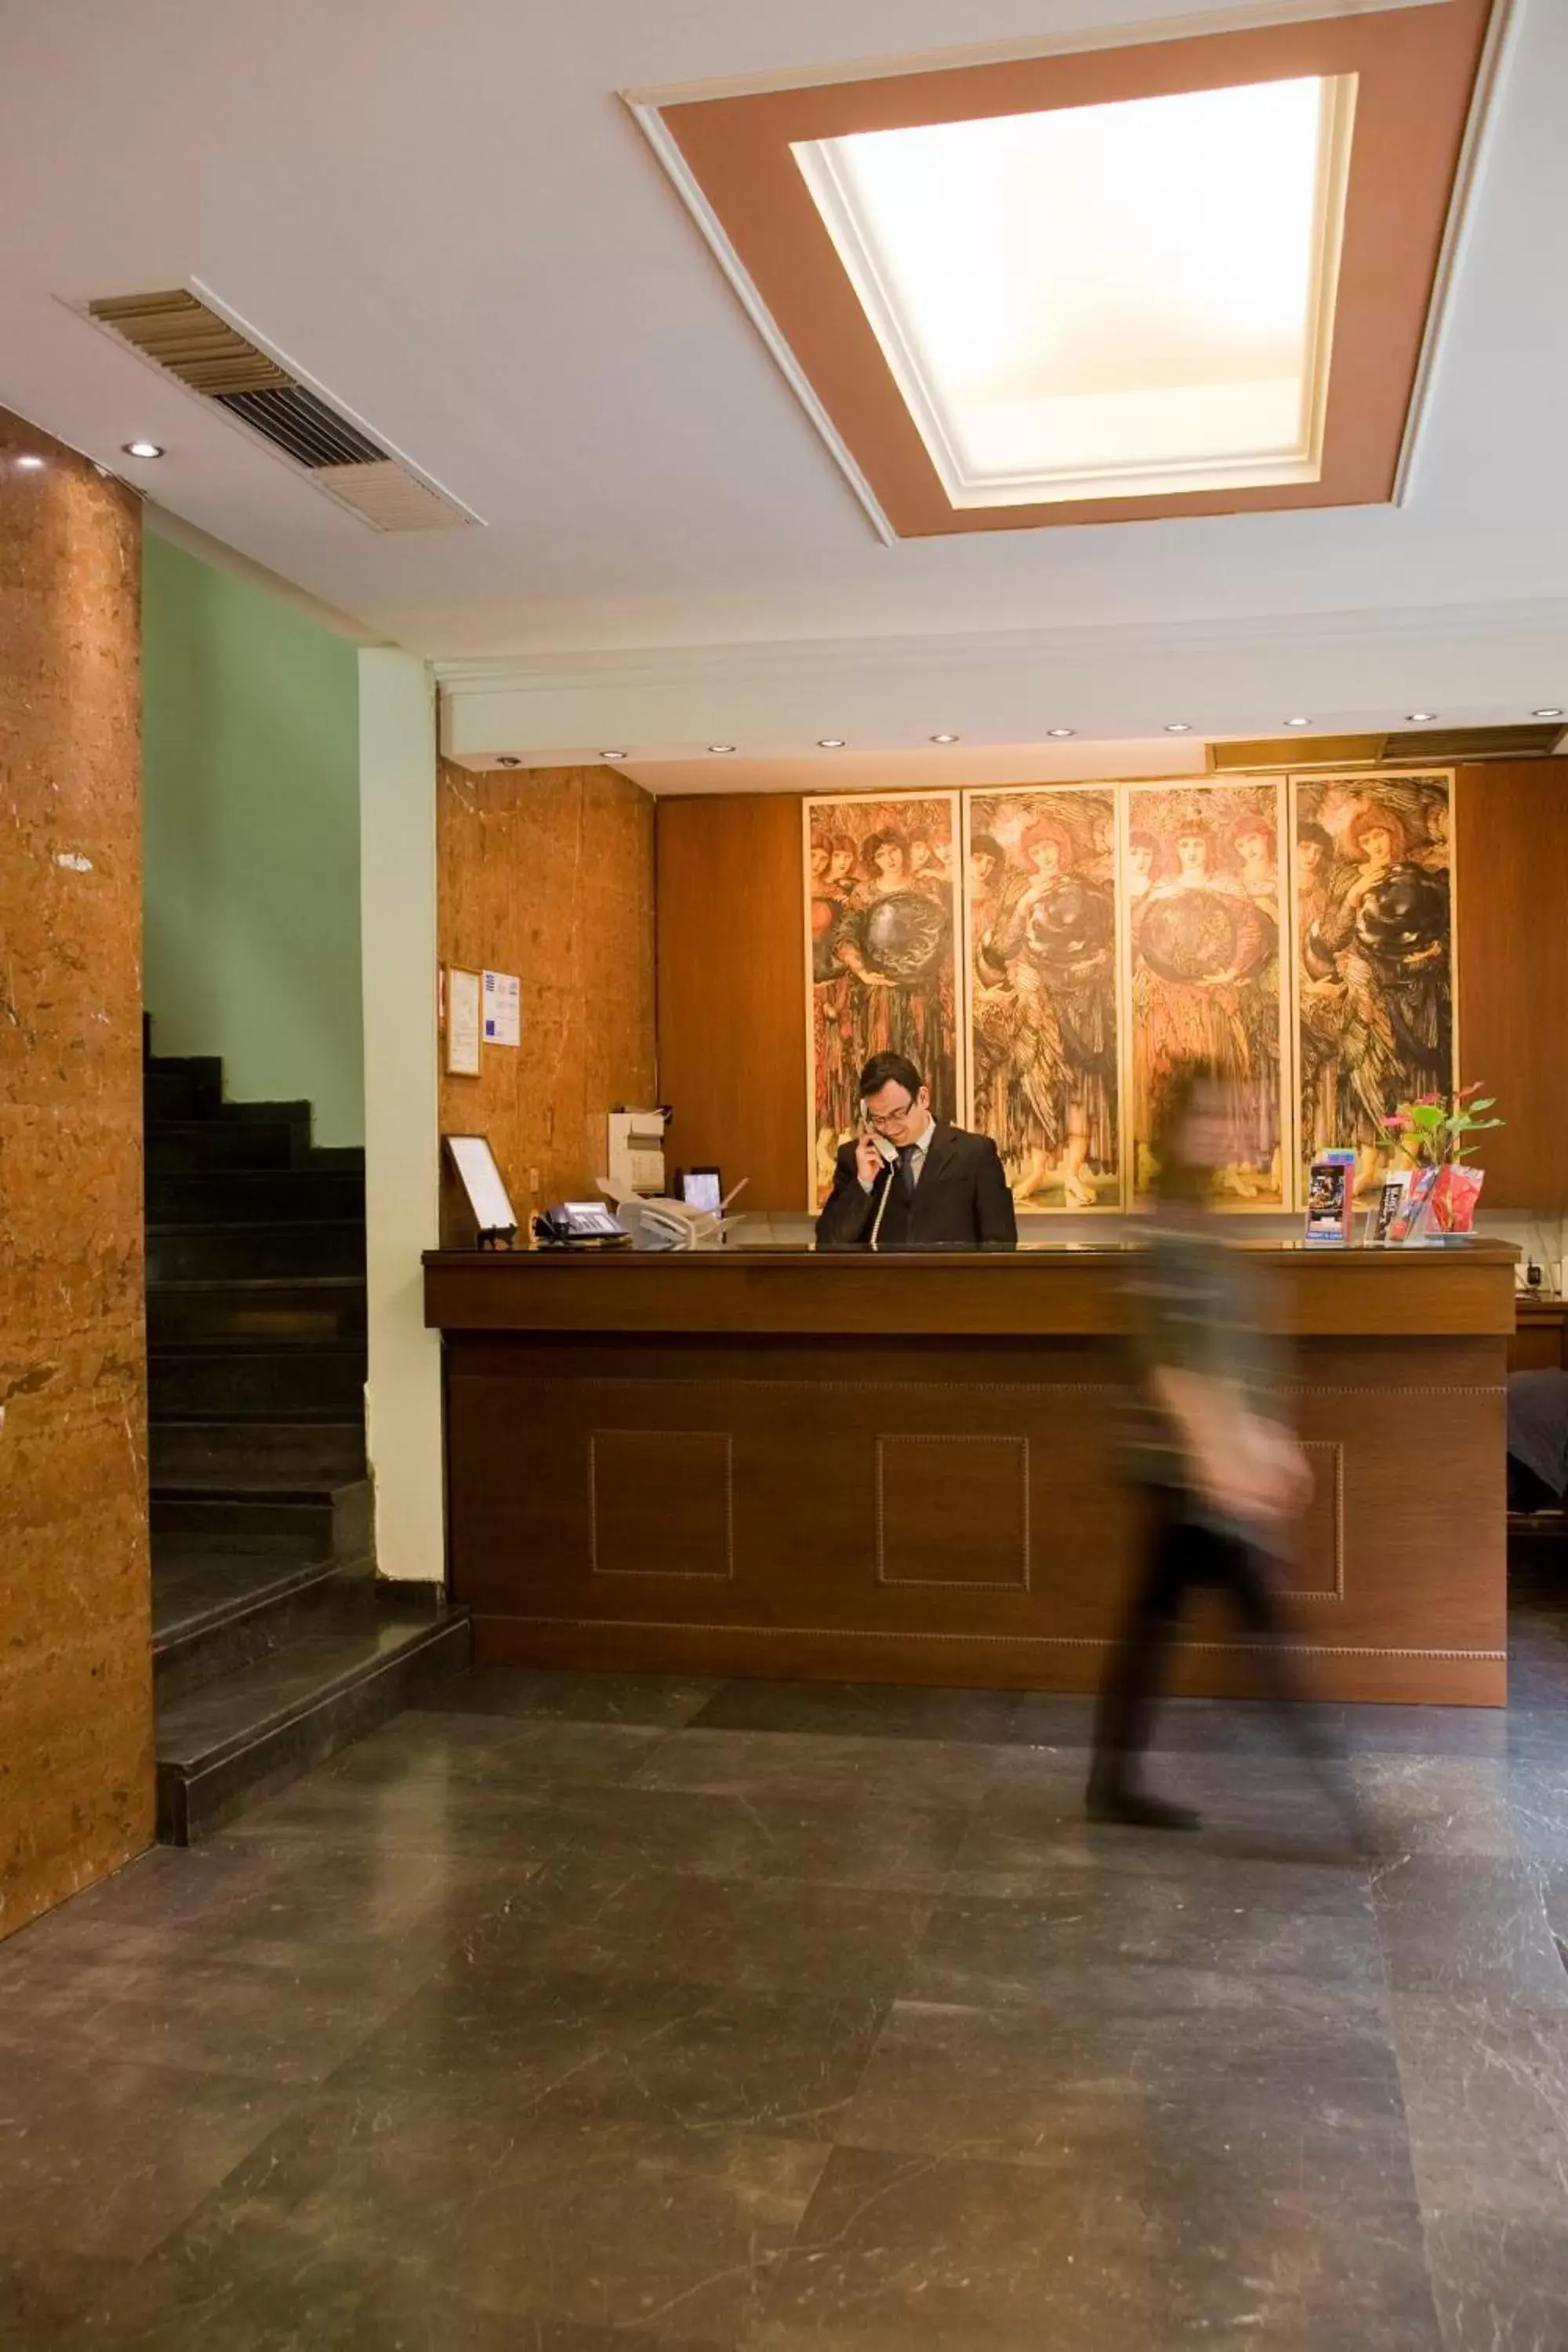 Lobby or reception, Lobby/Reception in Arethusa Hotel